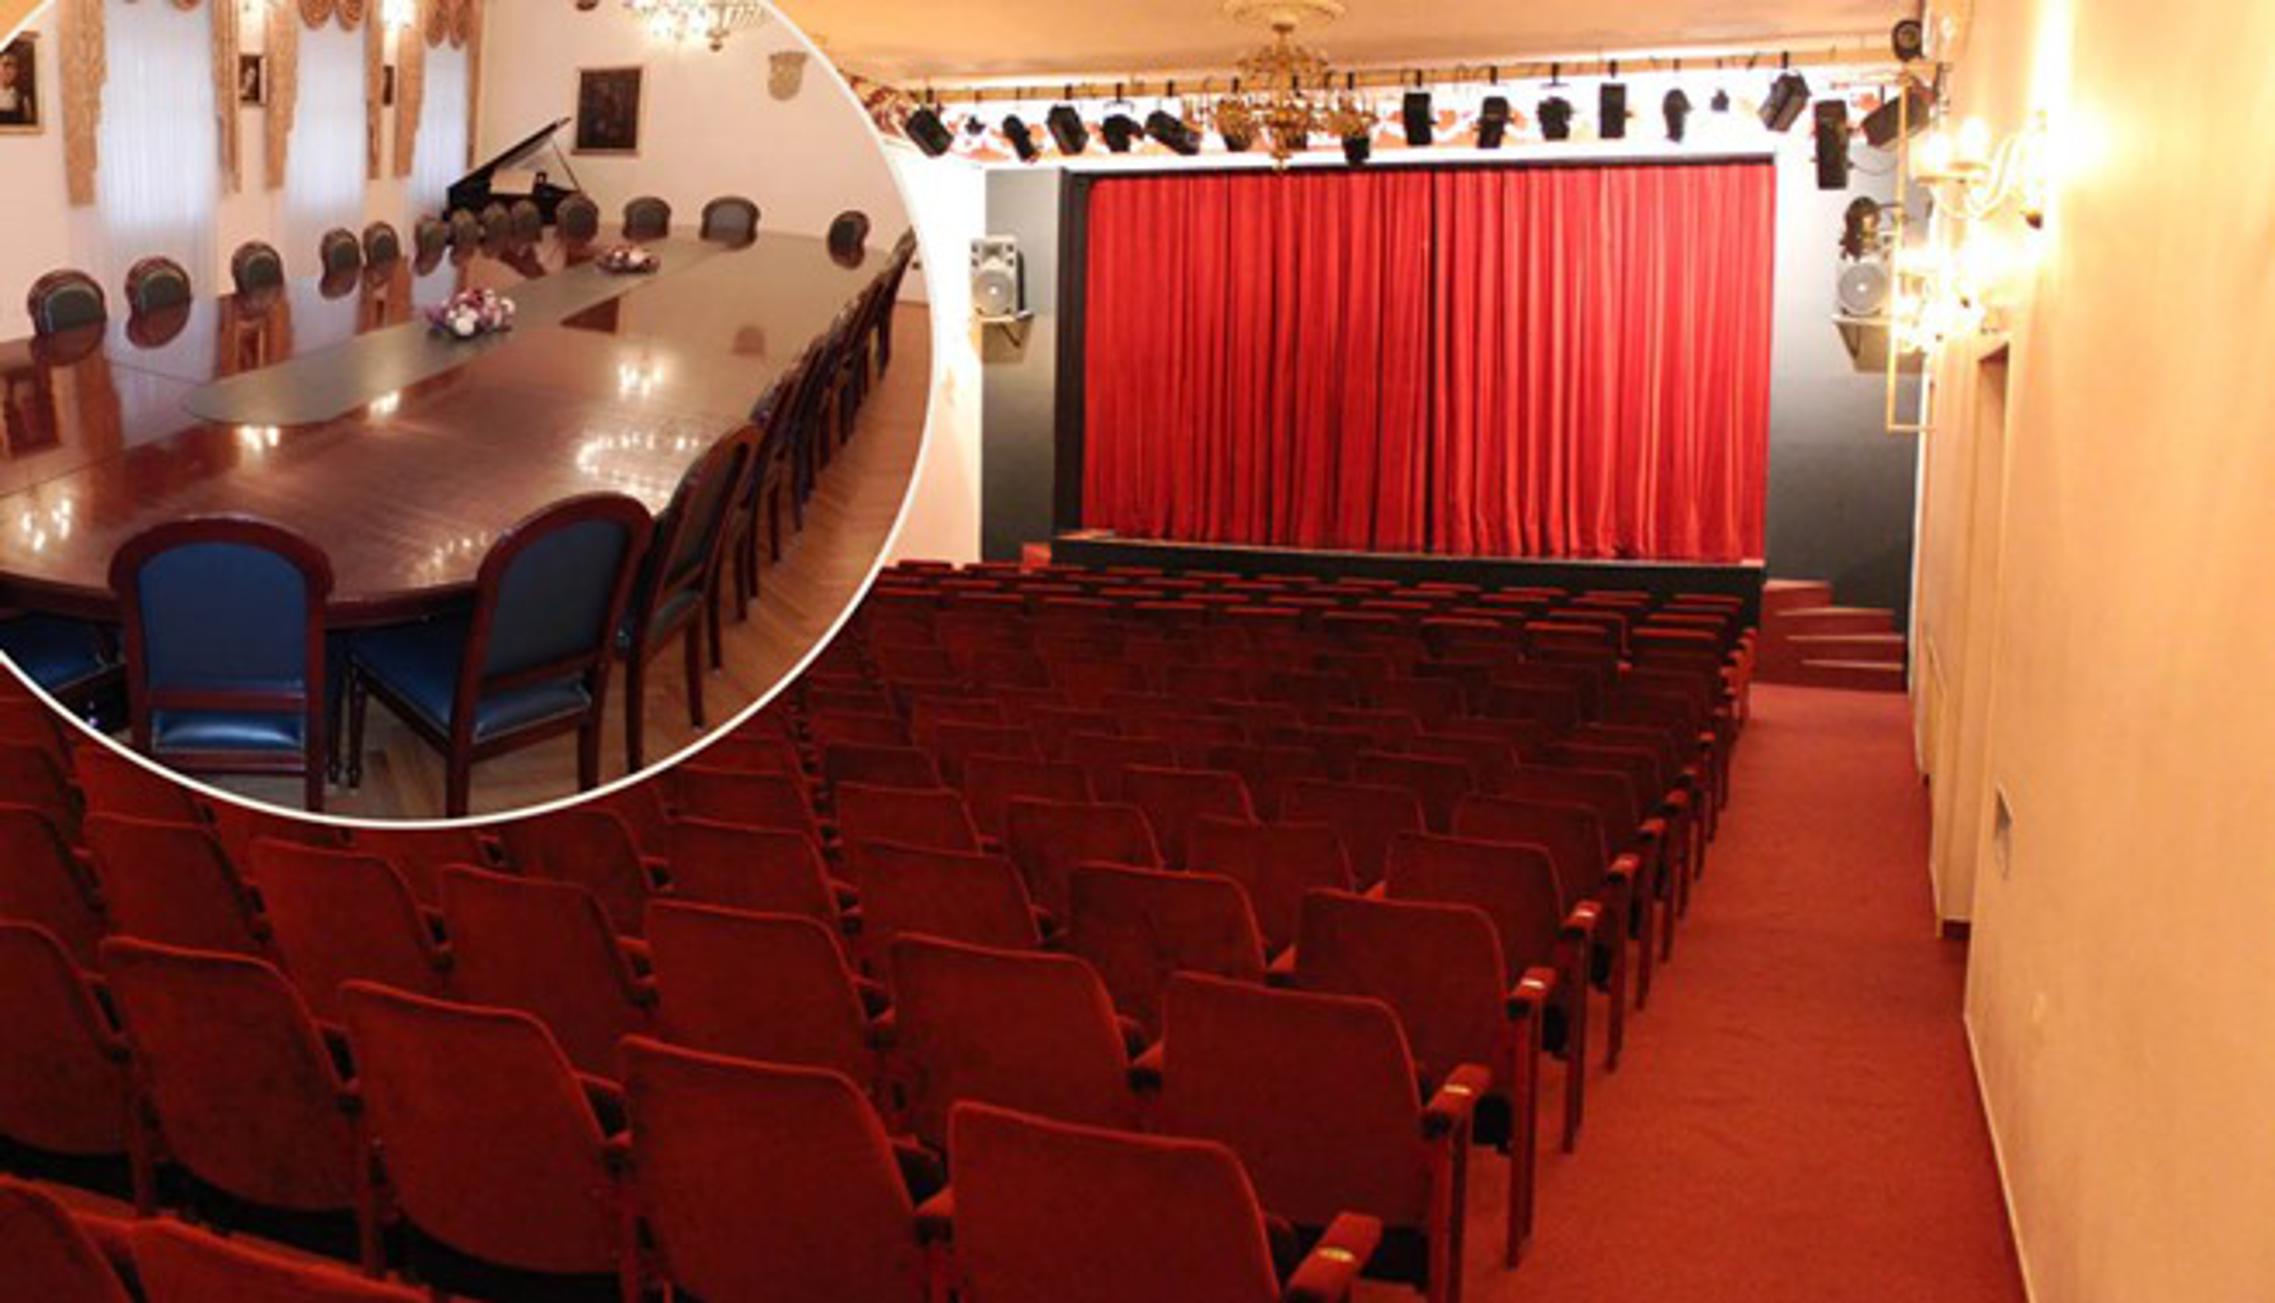 Raskošna Gradska vijećnica bit će zamijenjena dvoranom Gradskog kazališta